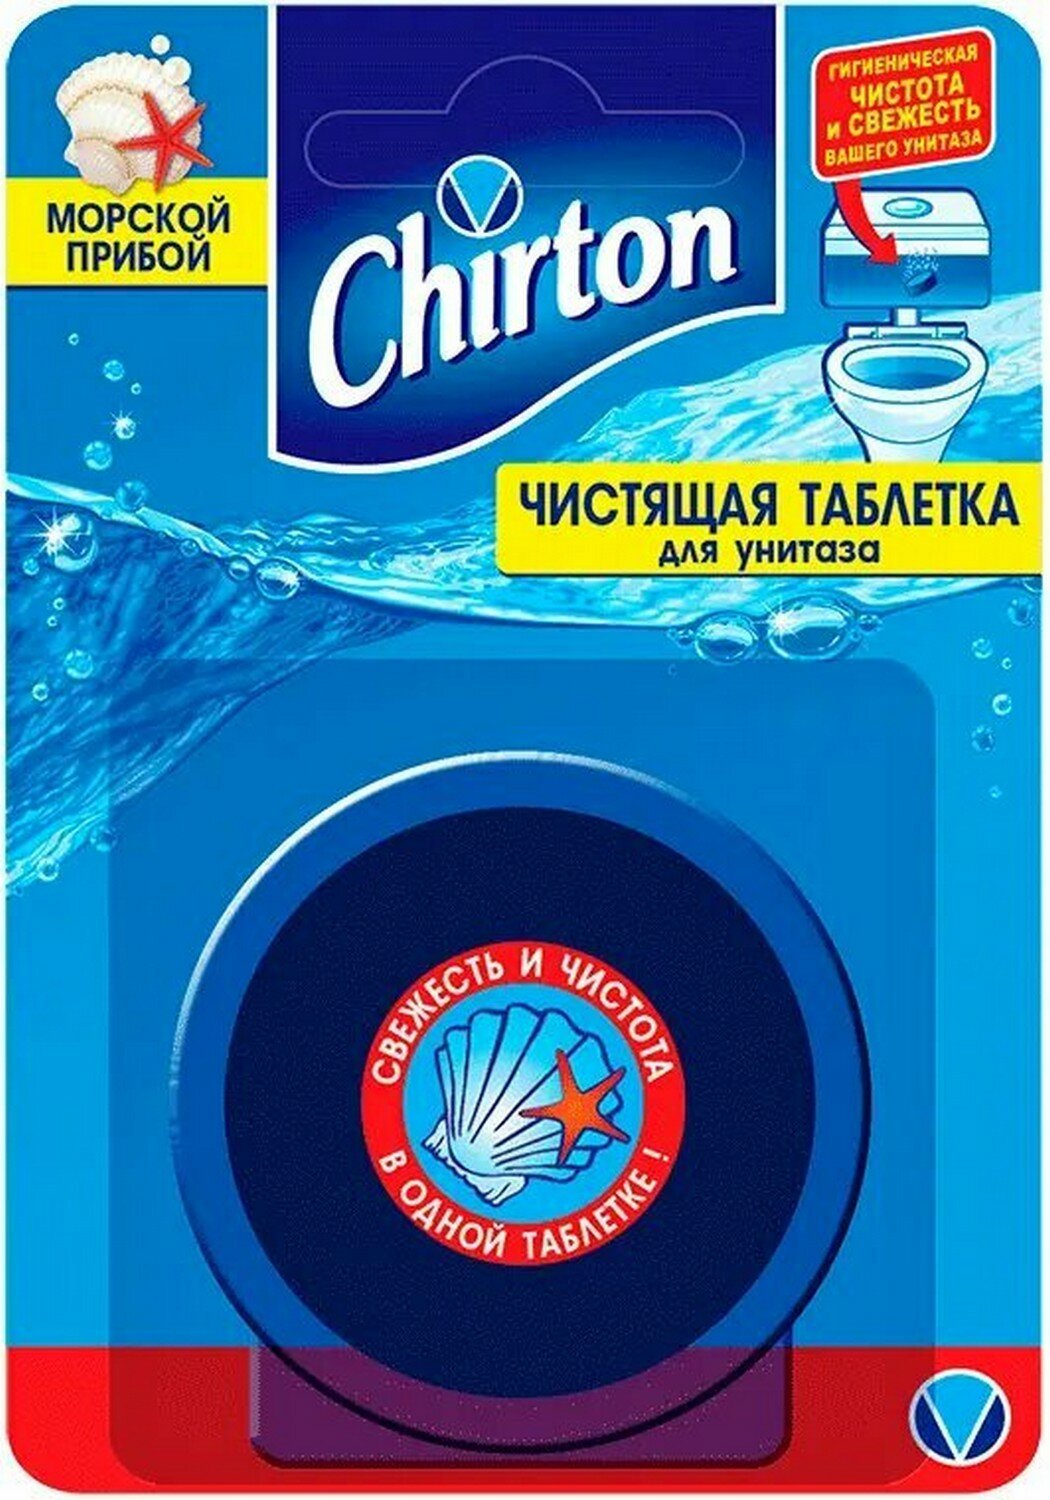 Чистящая таблетка для унитаза Чиртон Морской Прибой